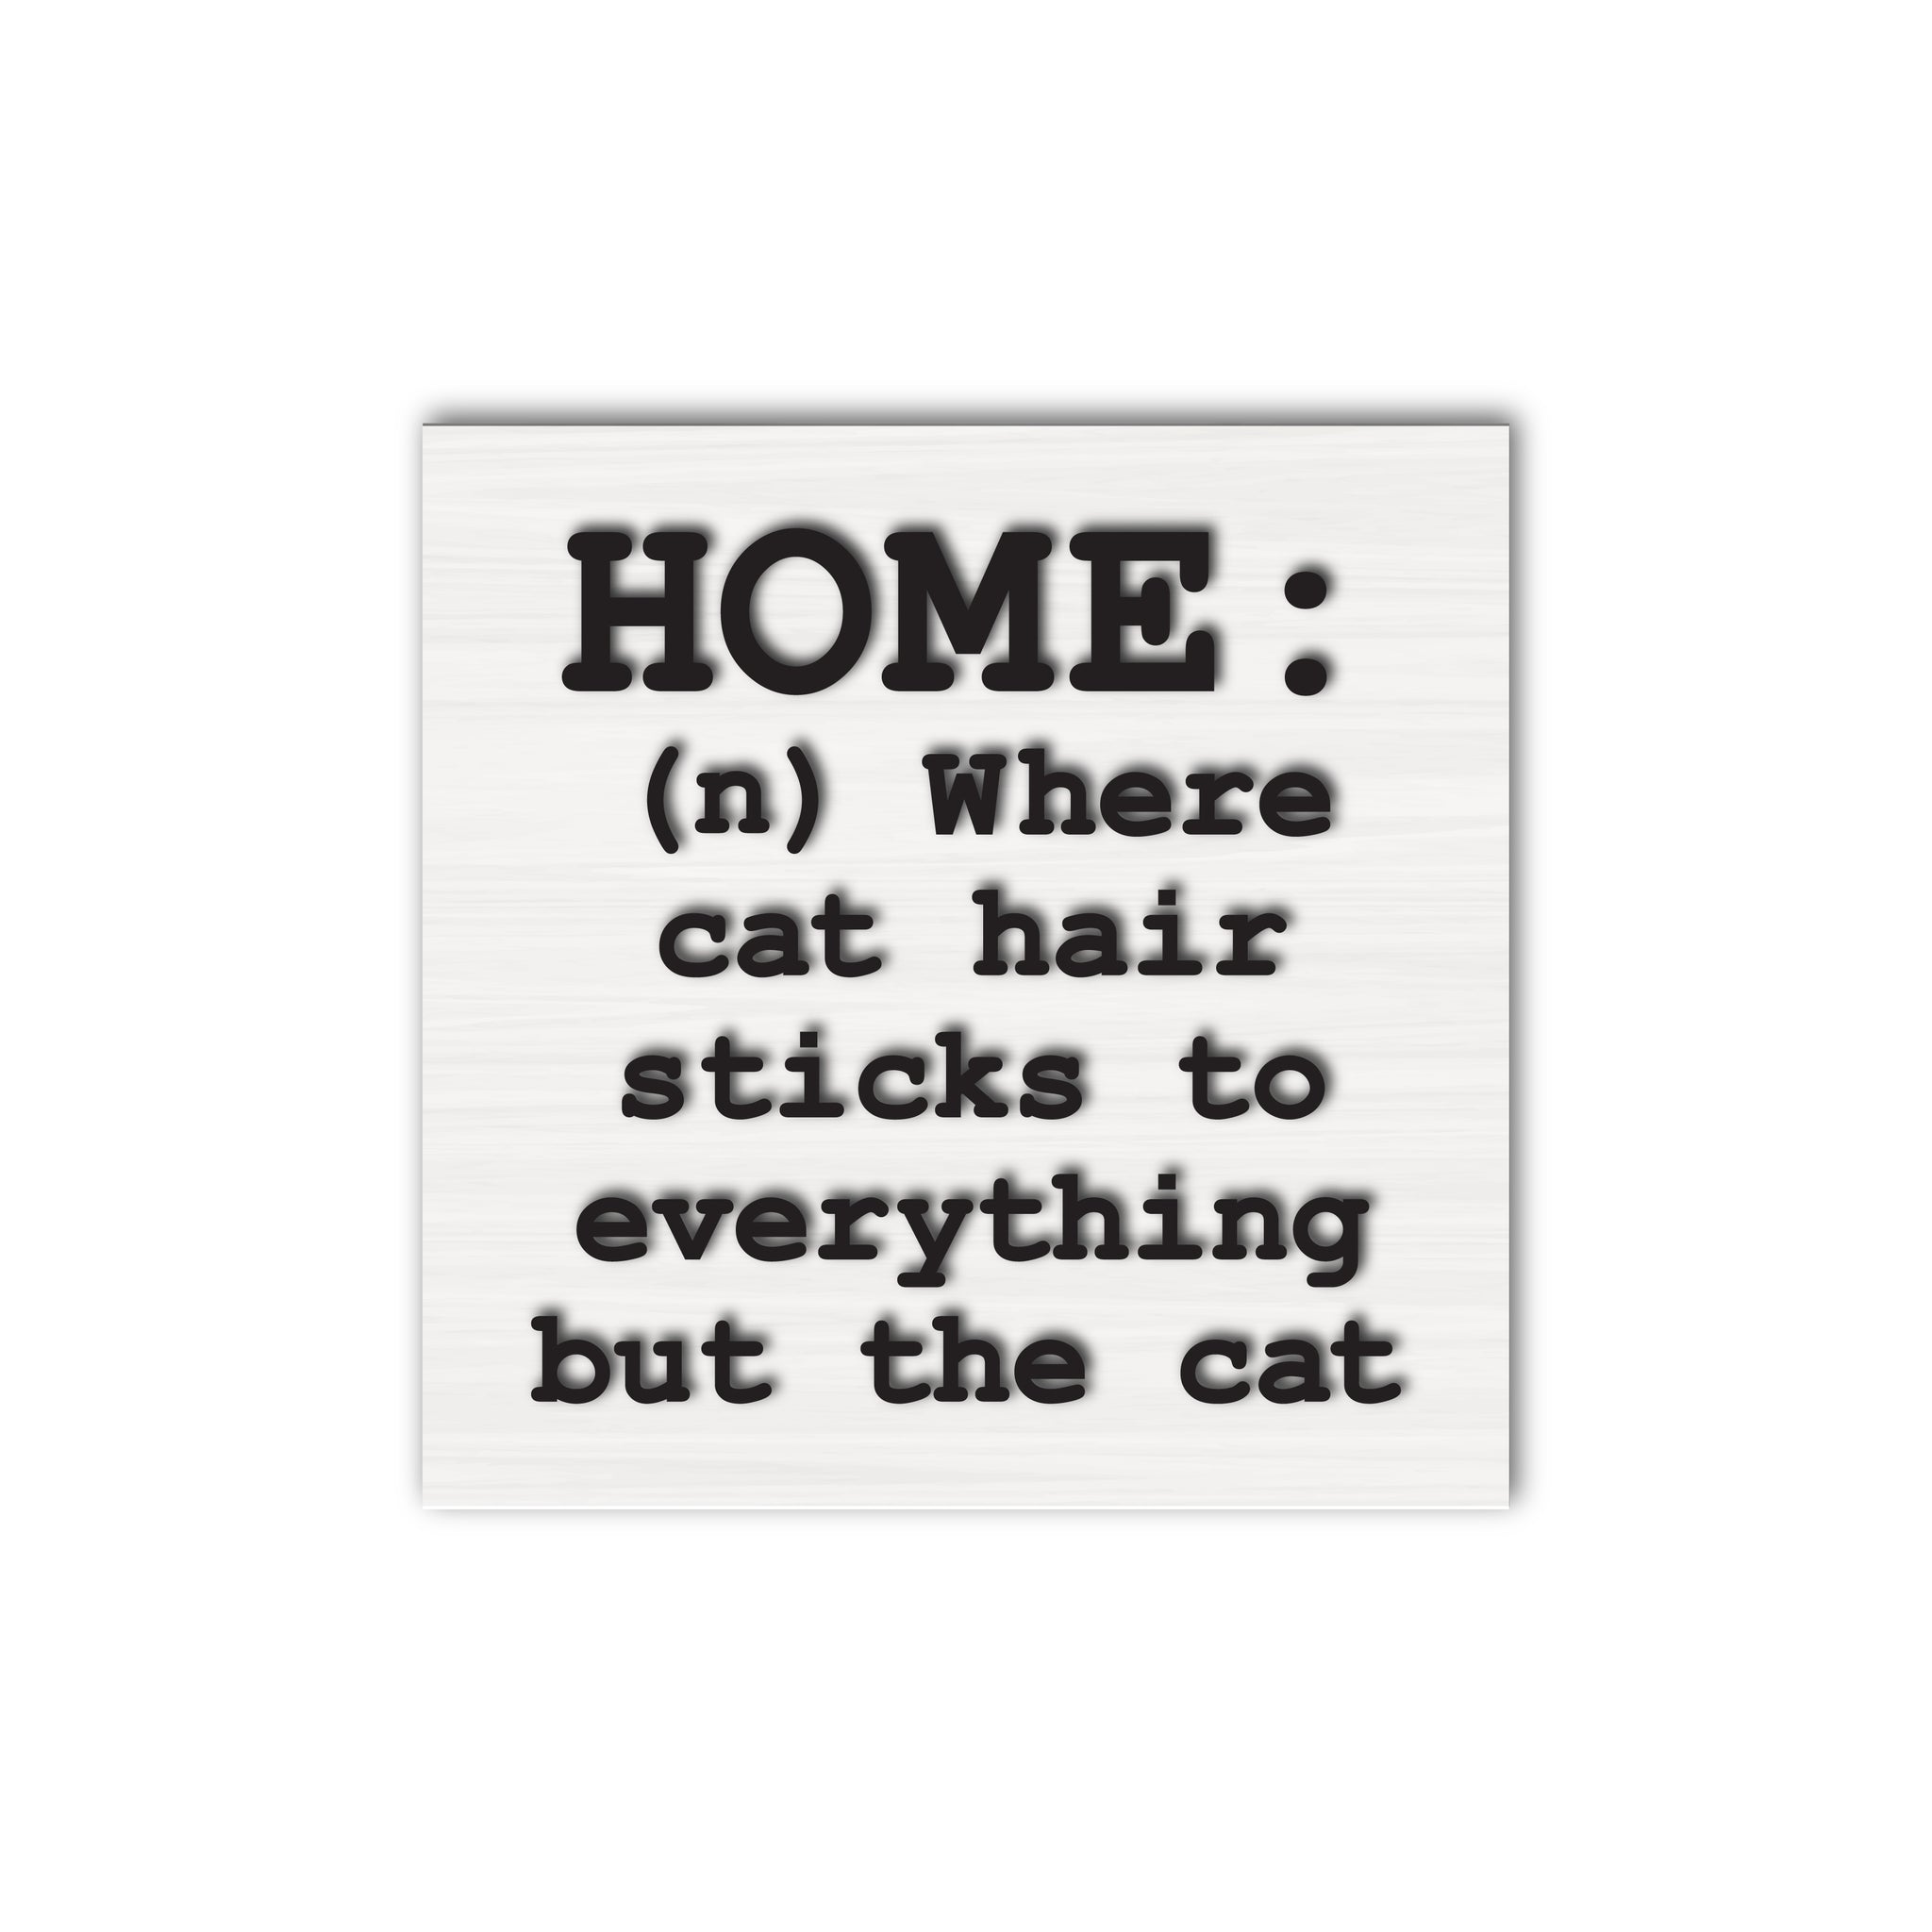 Home (n) Cat Hair